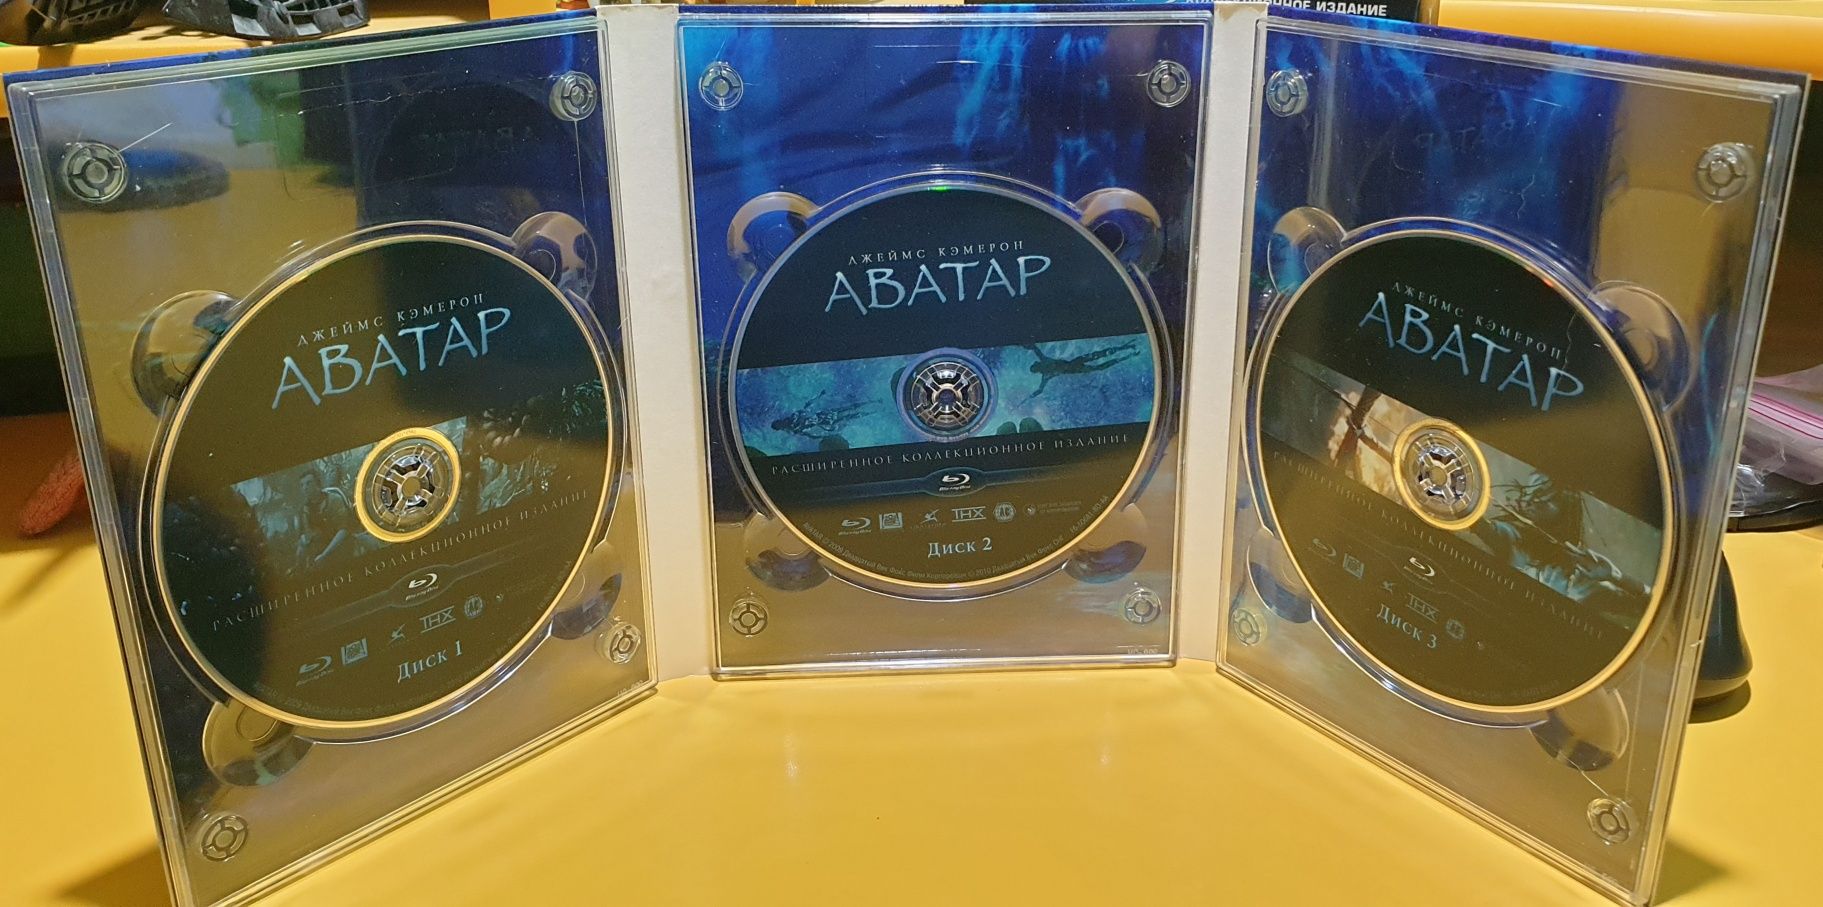 Blu ray коллекційне видання фільму Аватар,ліцензія.
В комплекті іде 3